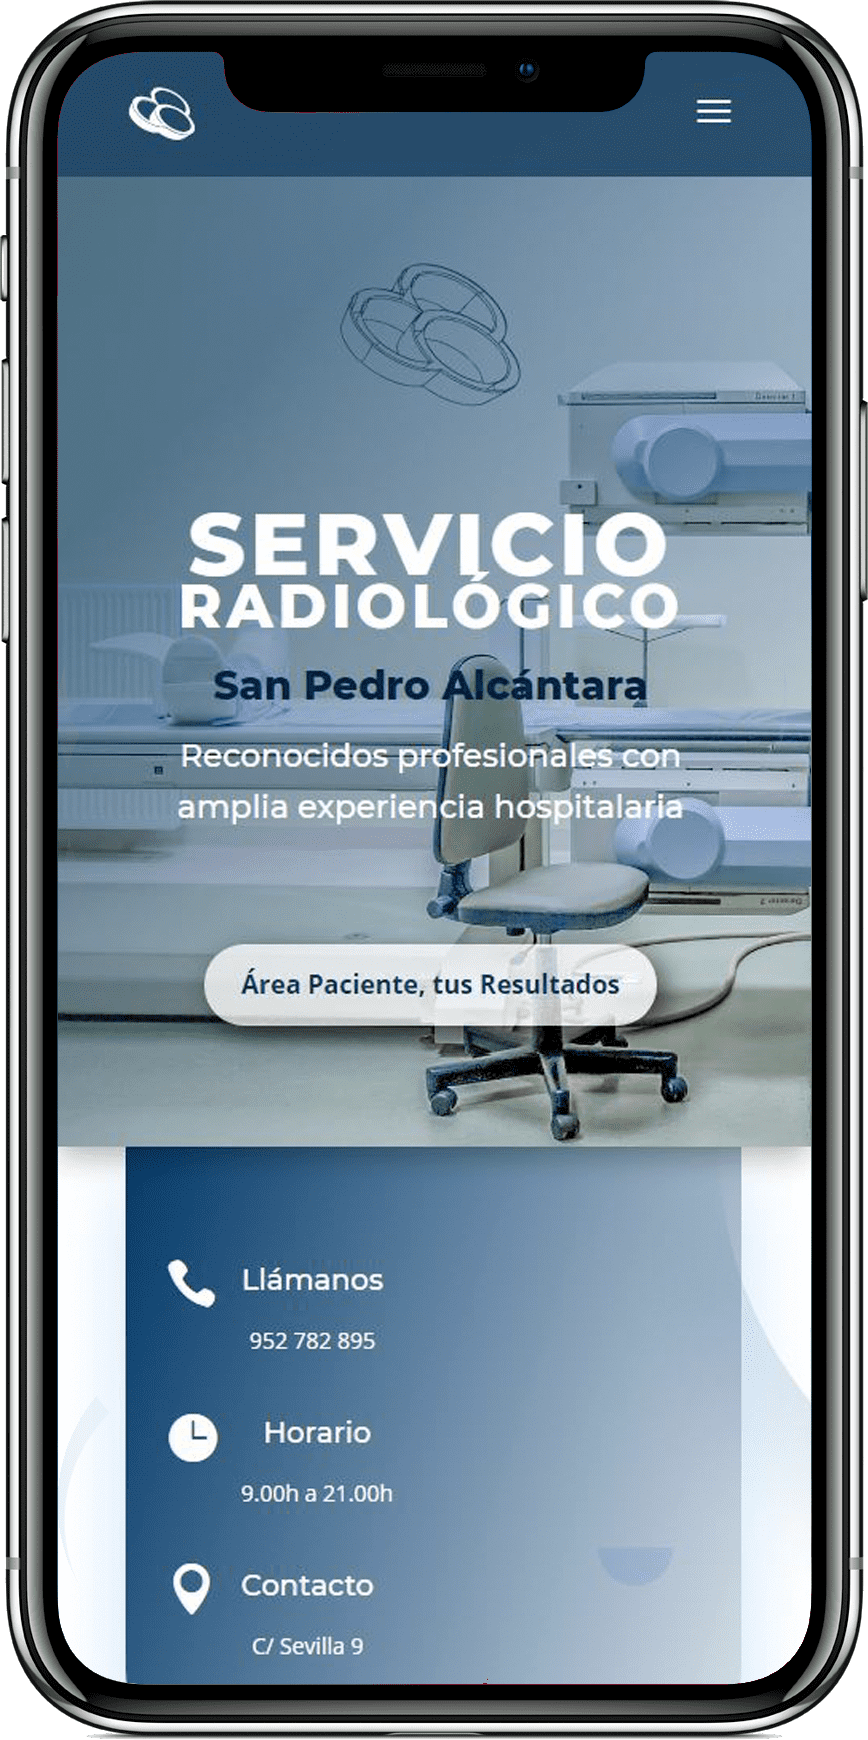 Servicio radiologico area pacientes